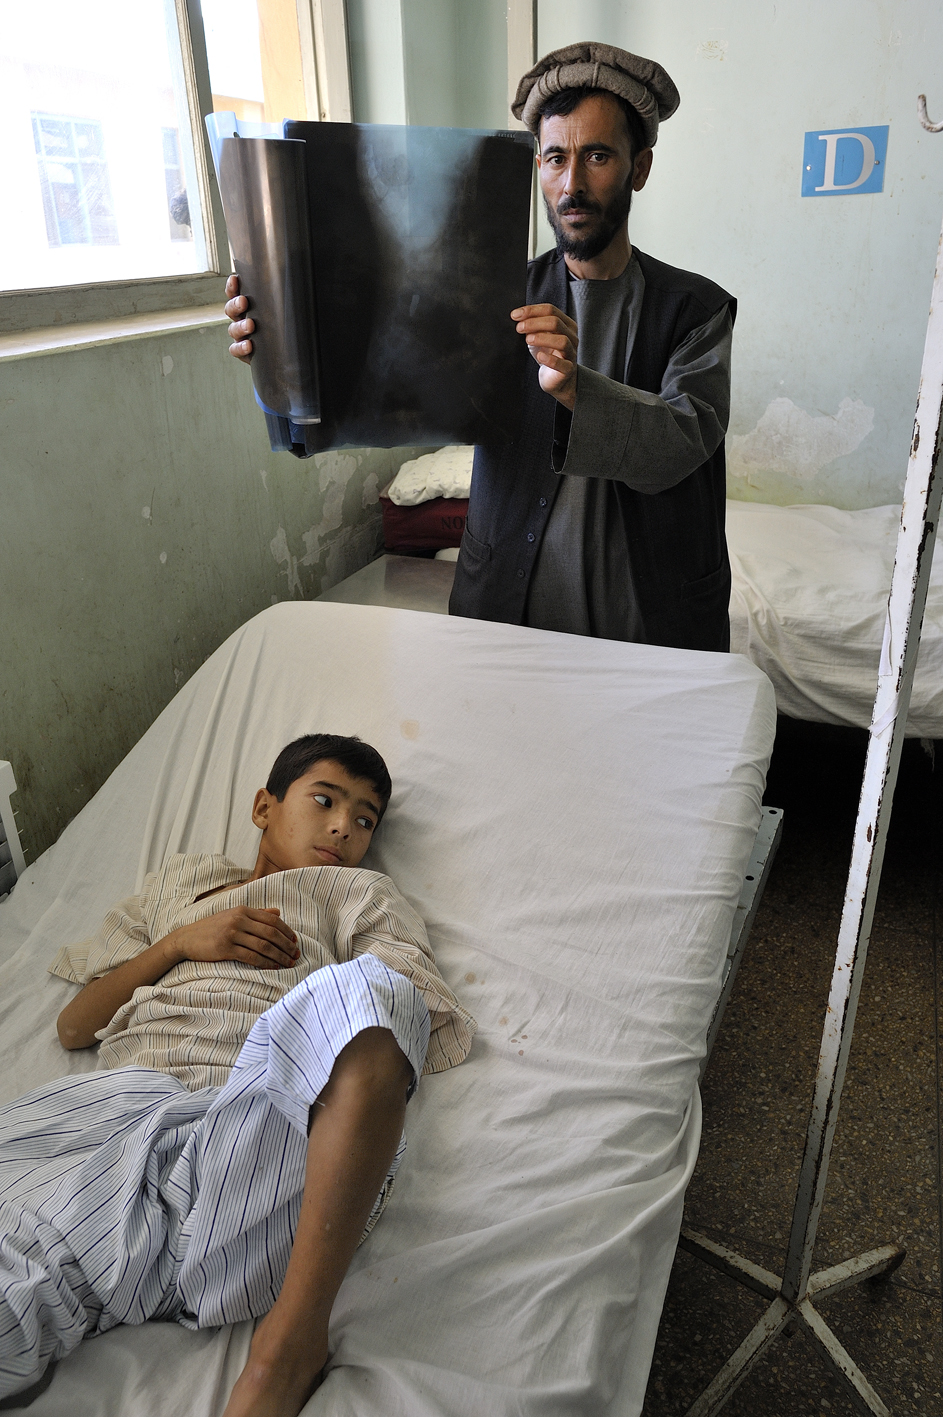 Das Projektil der Kalaschnikow steckt neben der Wirbelsäule des Jungen, Krankenhaus Kunduz, Nordafghanistan. © Tobias Strahl